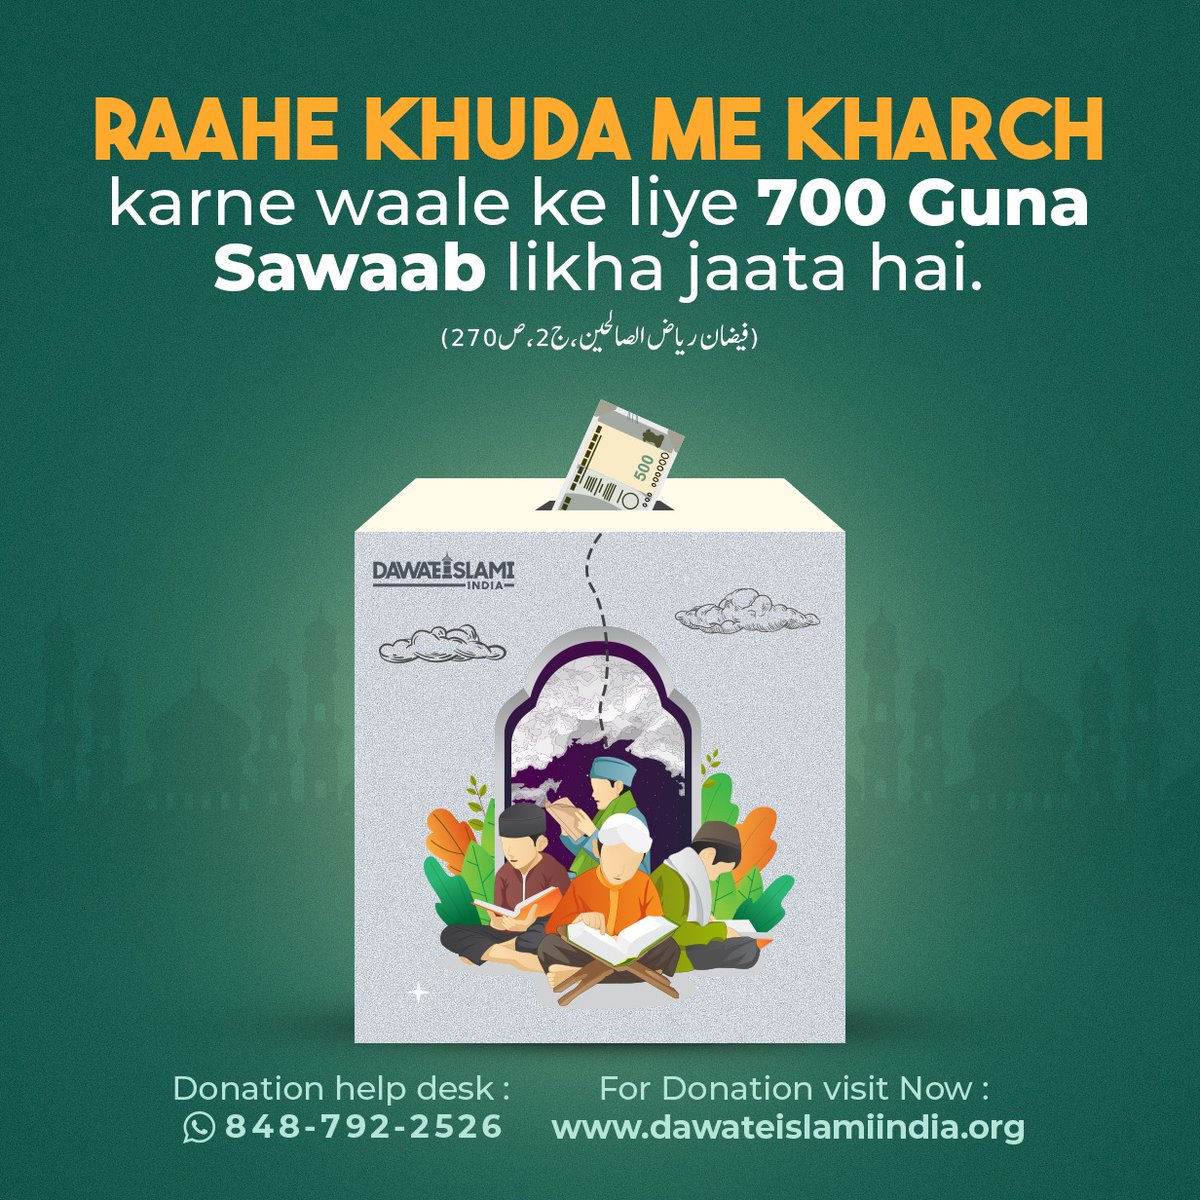 700 Guna Sawaab Apna Chanda (Donation) DawateIslami India Ko Dijiye Aapke Chande (Donations) ko kisi bhi Jaiz, Deeni, Islahi (Reformatory), Falahi (Welfare), Khairkhwahi, Roohani Aur Bhalai ke kam me Kharch kiya Ja Sakta Hai Donate Pay Online: dawateislamiindia.org